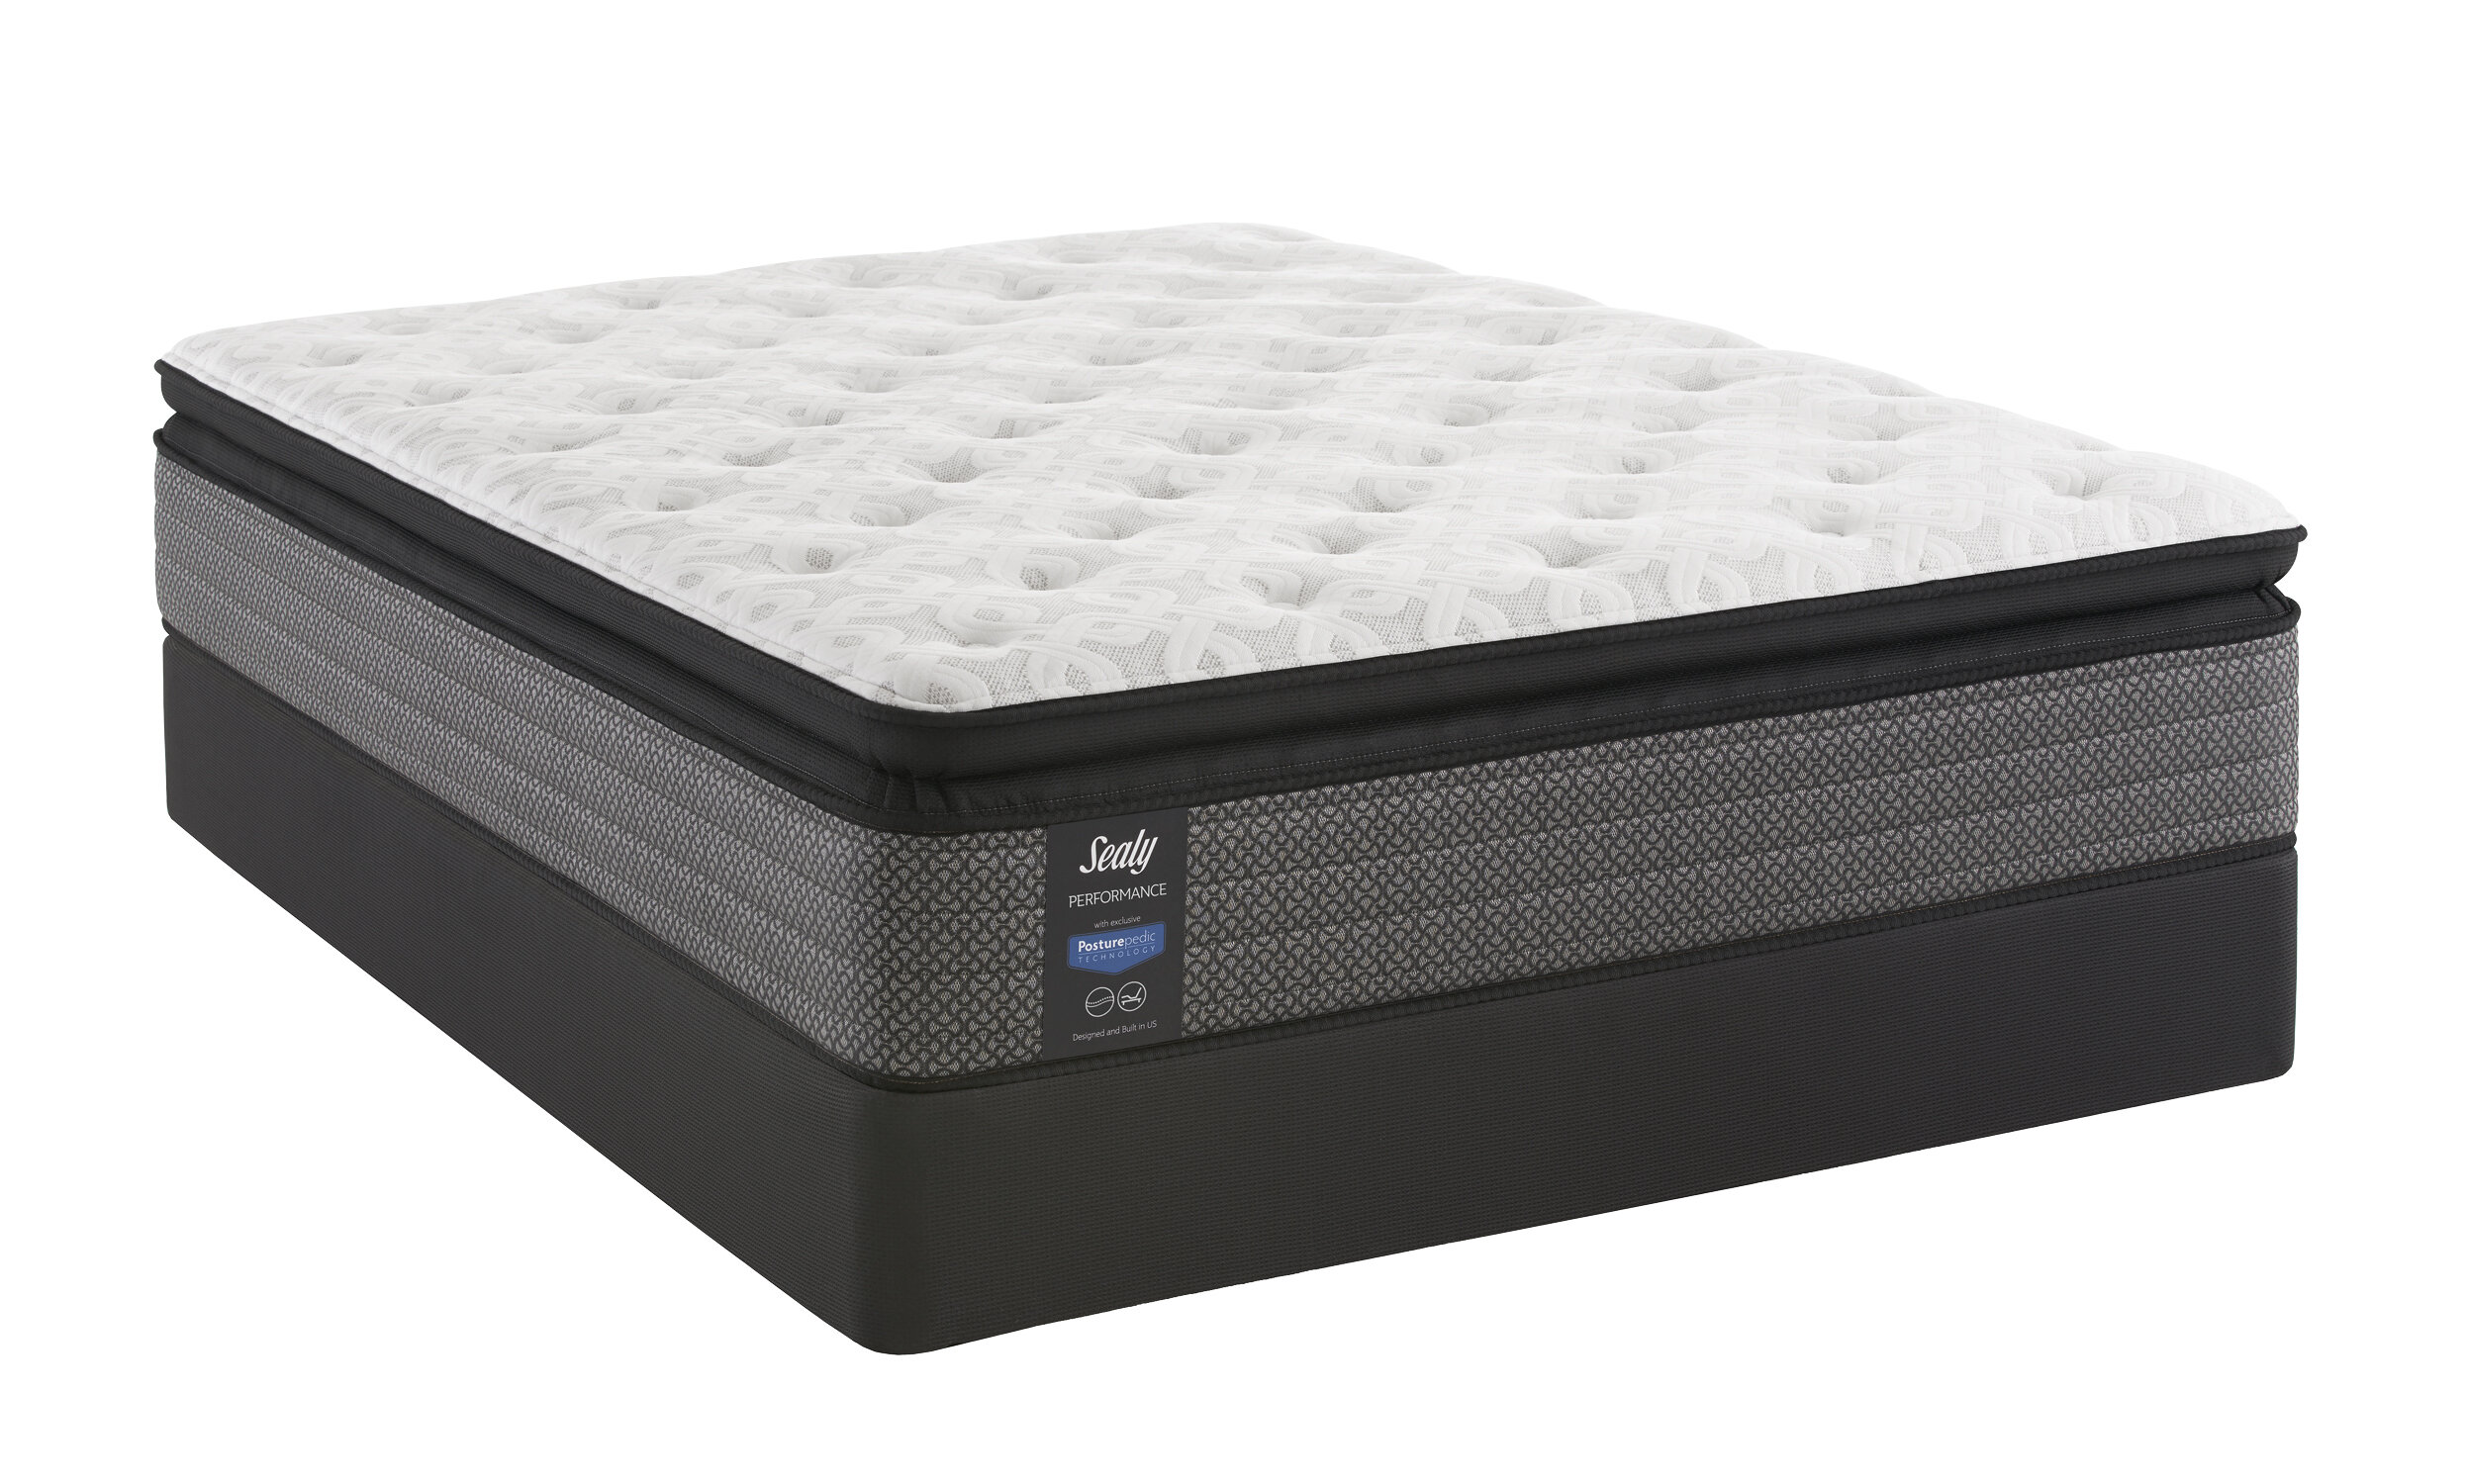 casaluna cool loft mattress pad reviews